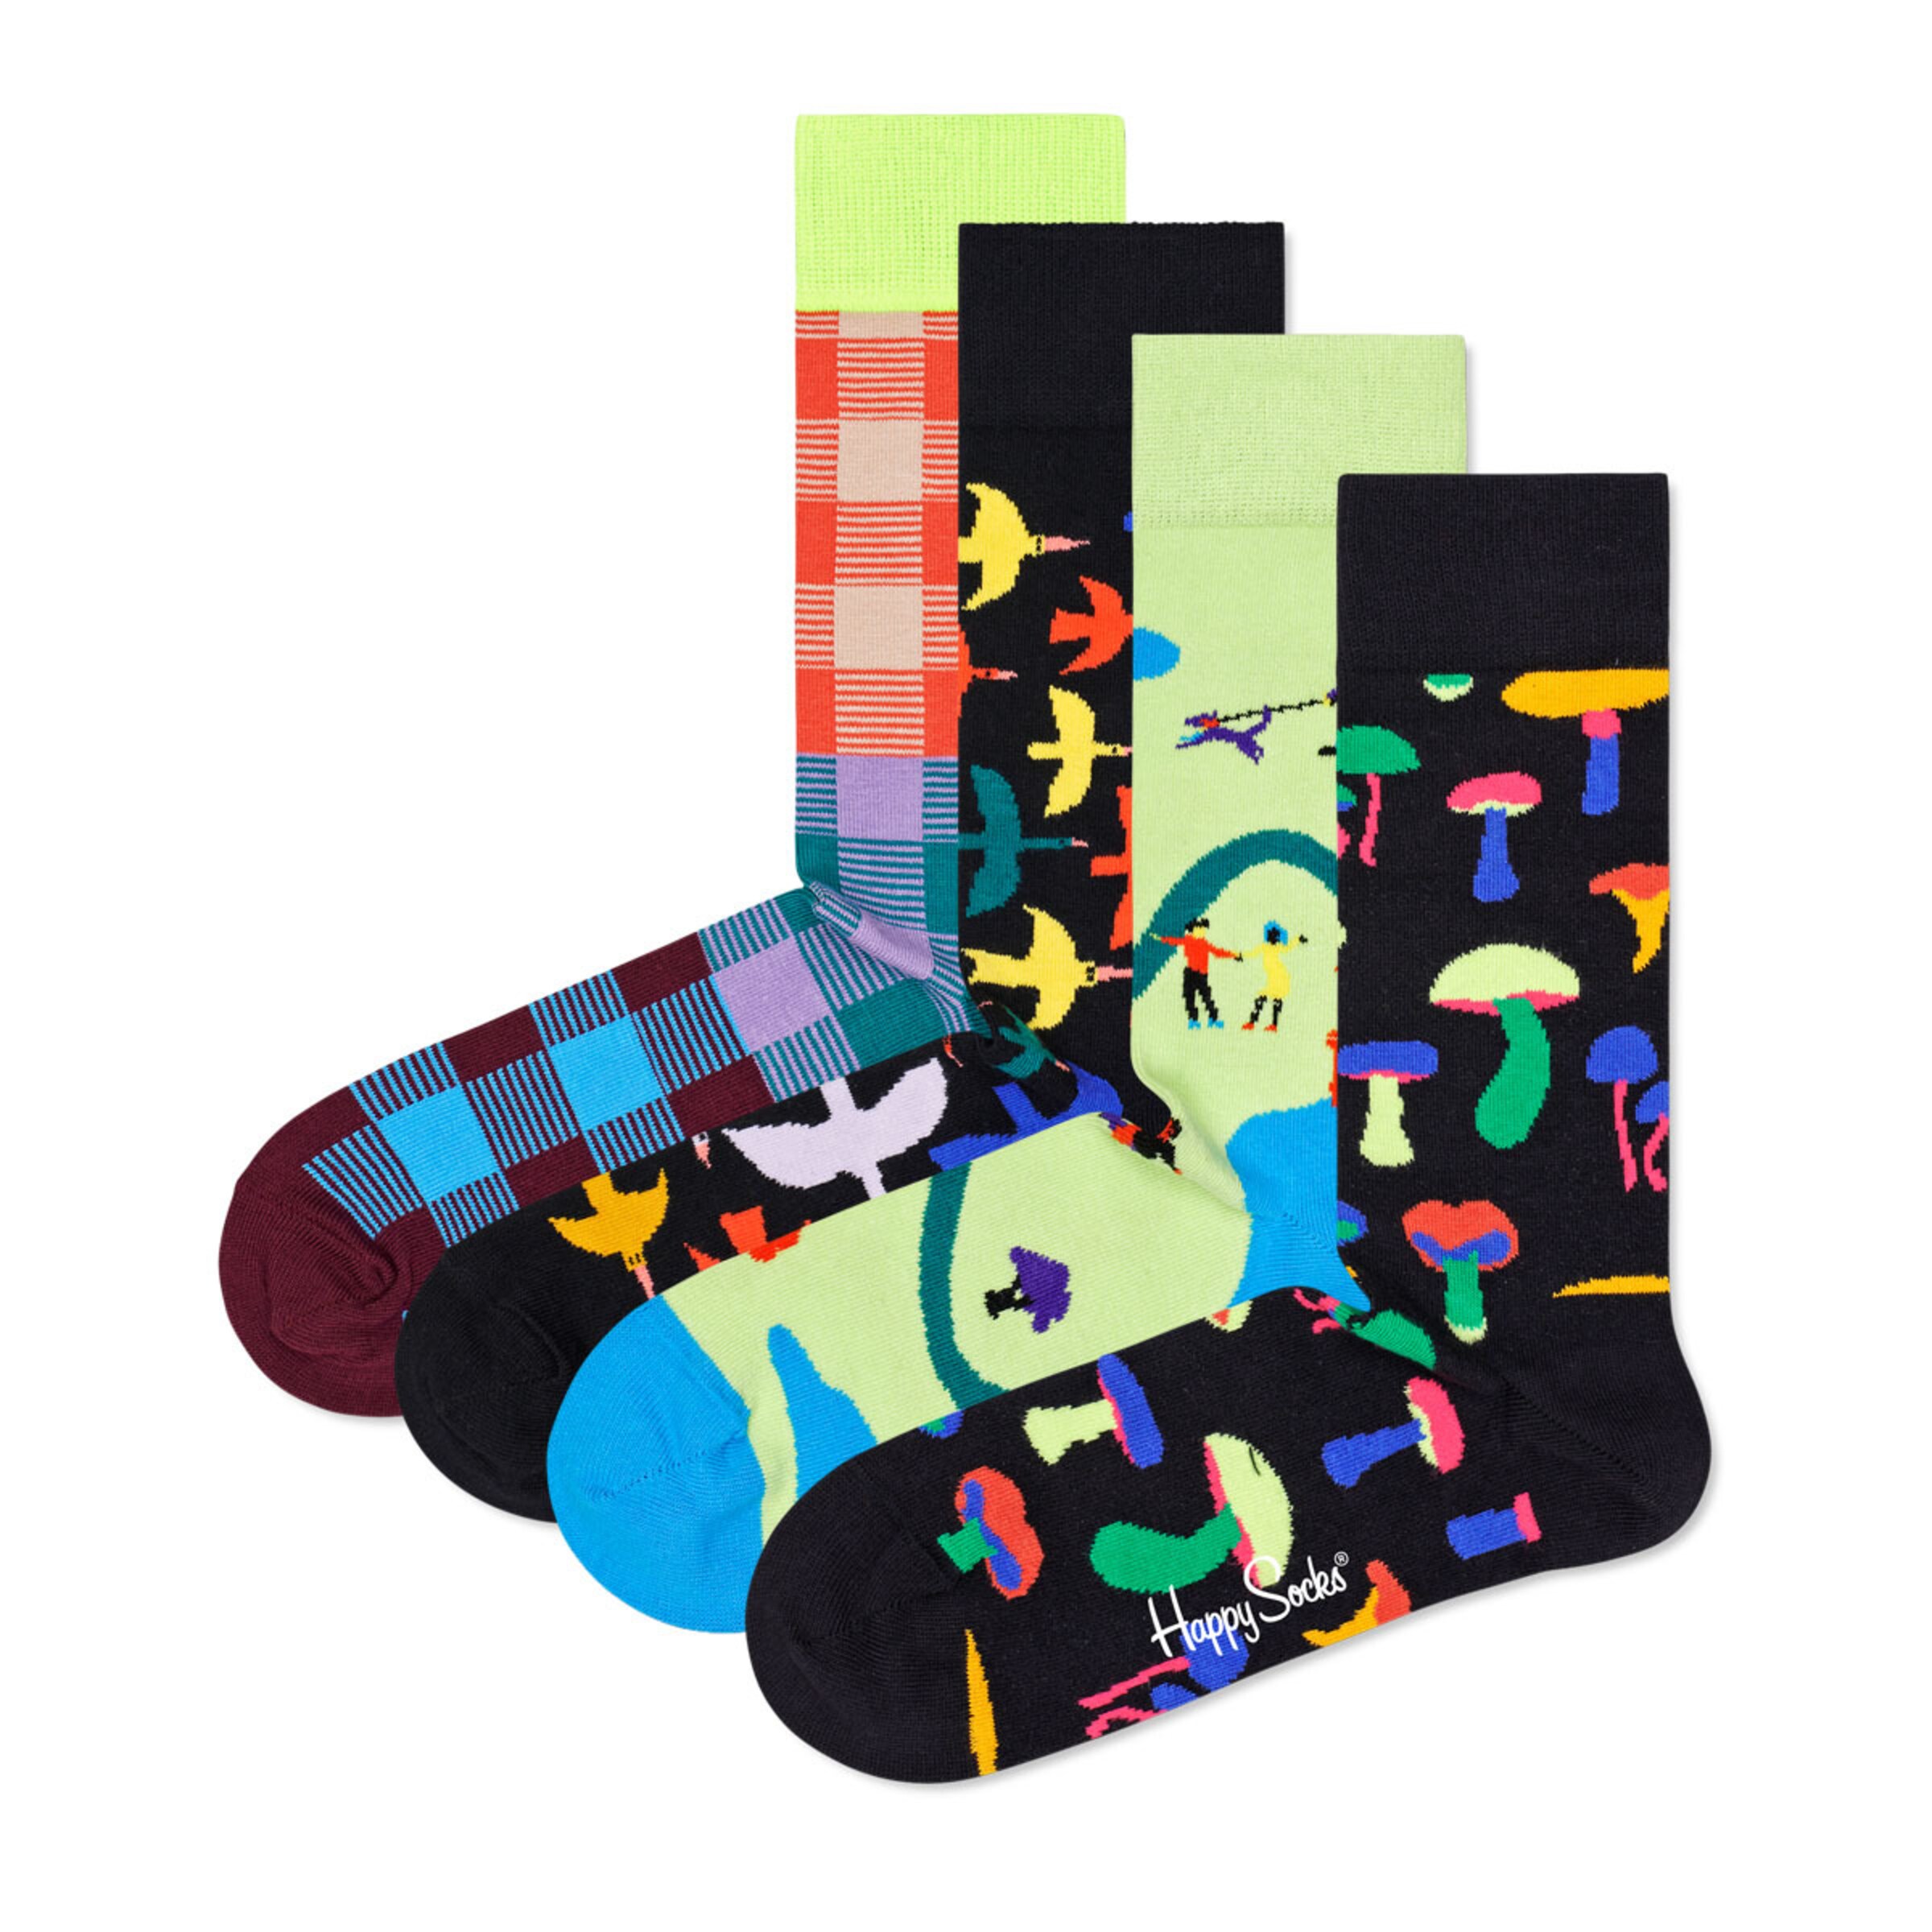 Frauen Wäsche Happy Socks Socken in Mischfarben - DZ51787